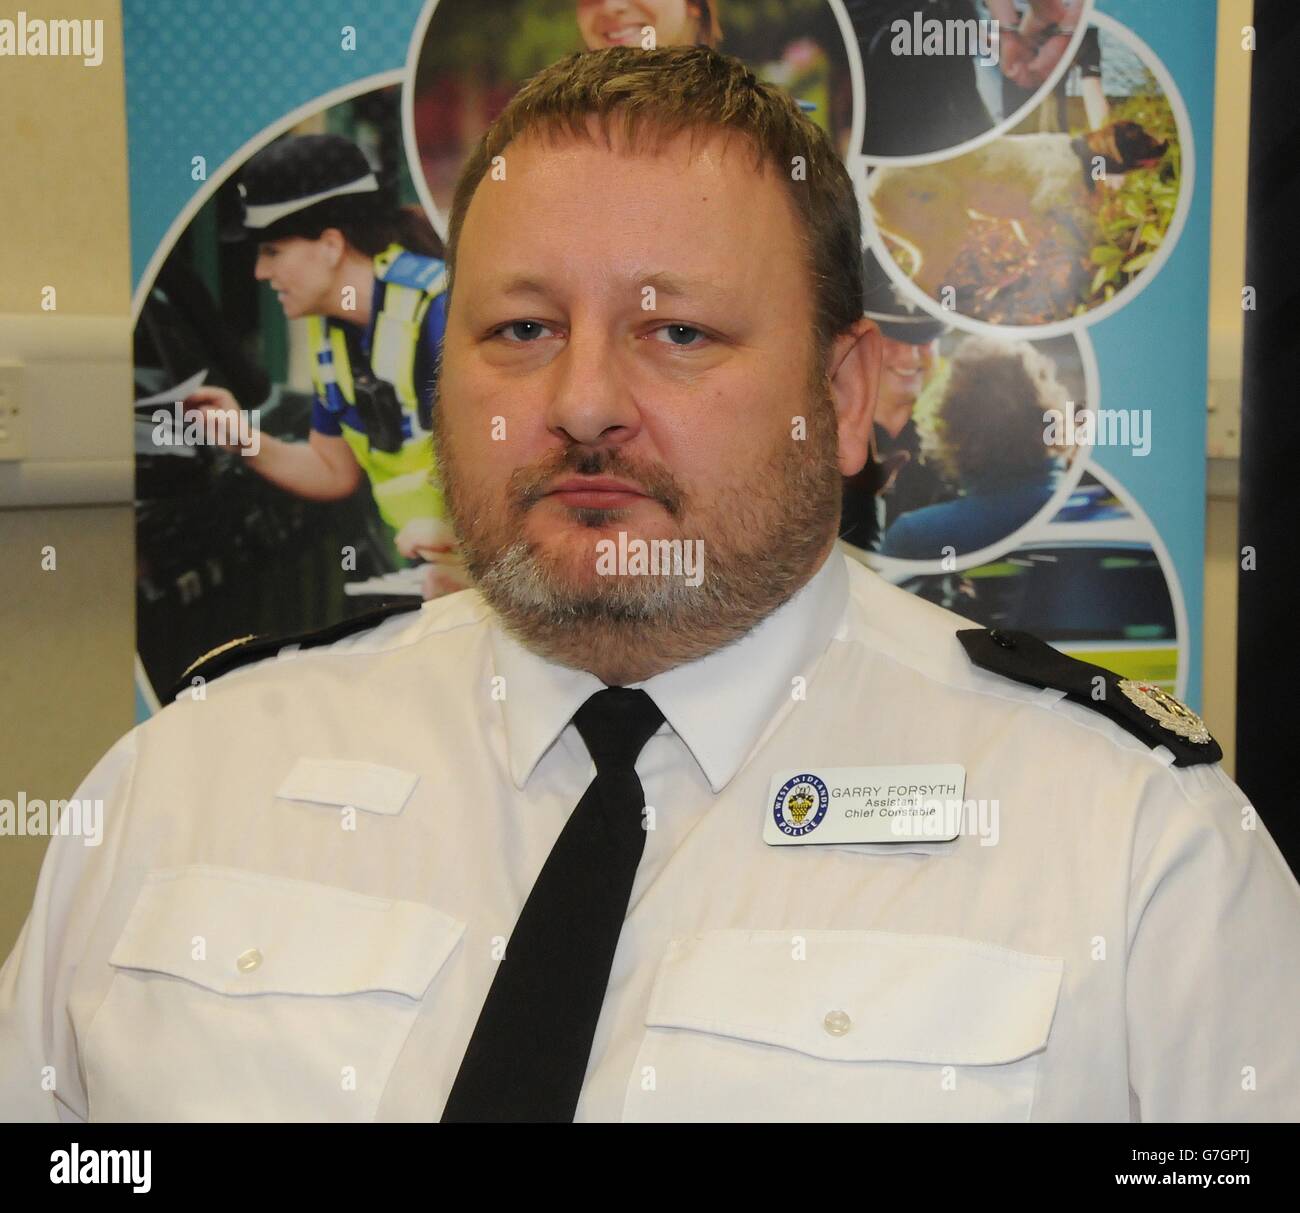 El Jefe Auxiliar de Policía de West Midlands, Constable Garry Forsyth, en la sede de su fuerza en Birmingham, durante una reunión informativa de prensa sobre una posible amenaza contra los oficiales que prestan servicio. Foto de stock